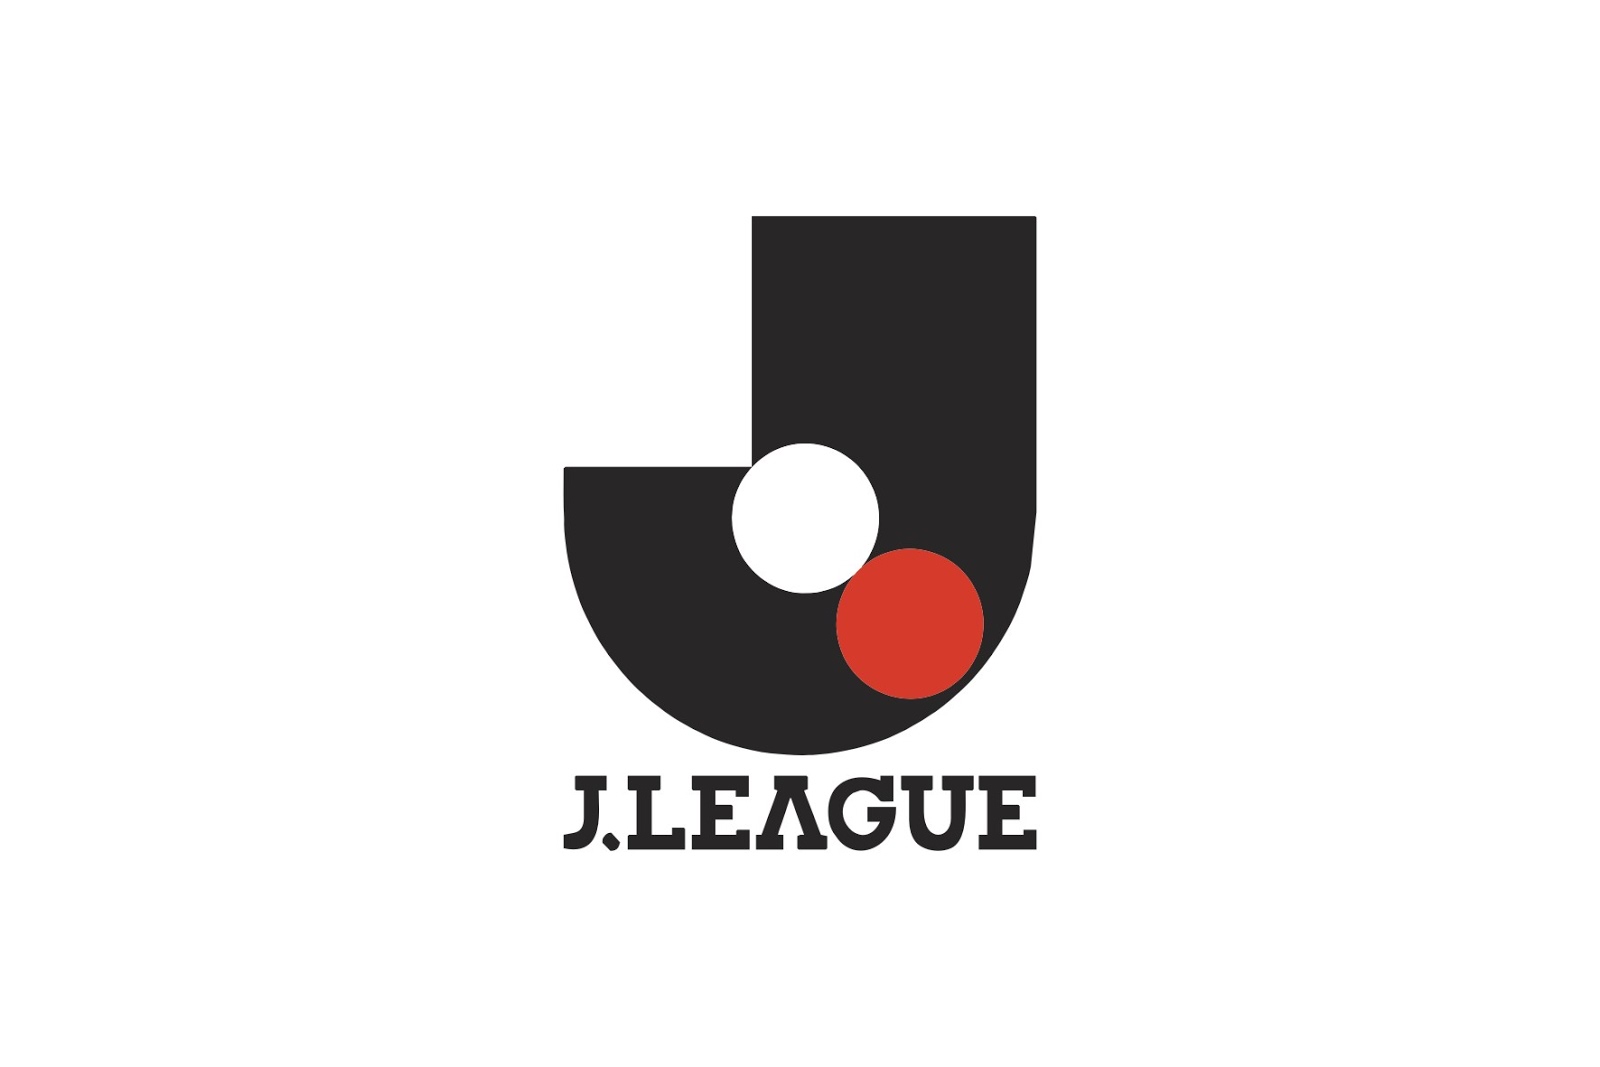 J League | Niềm Tự Hào Bóng Đá Của Người Dân Nhật Bản